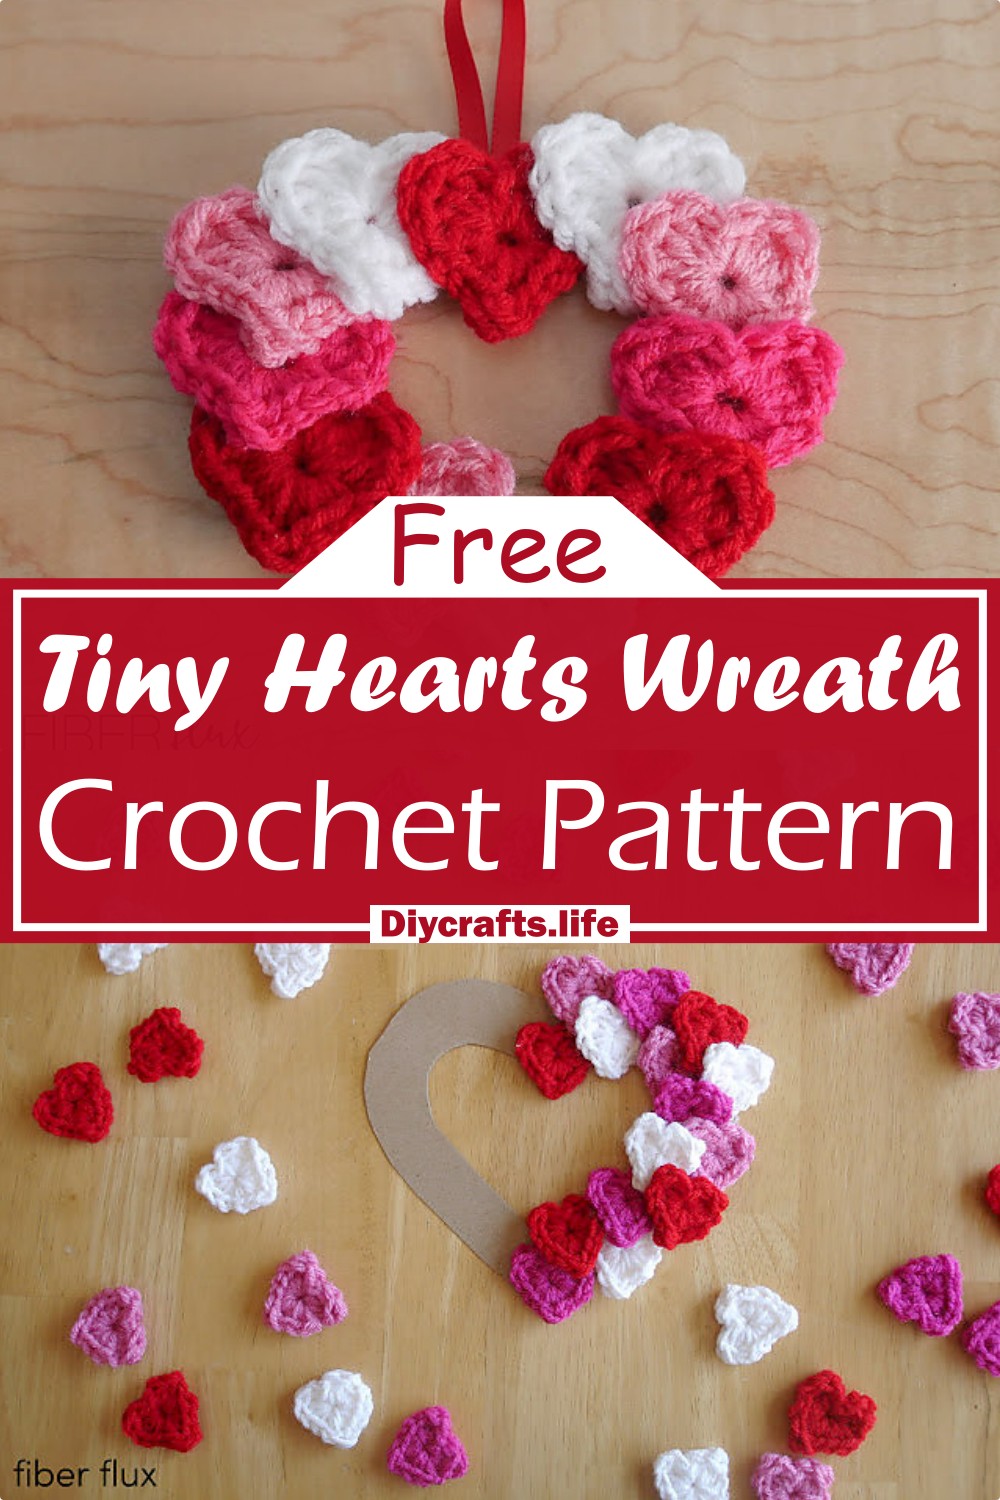 Crochet Tiny Hearts Wreath Pattern